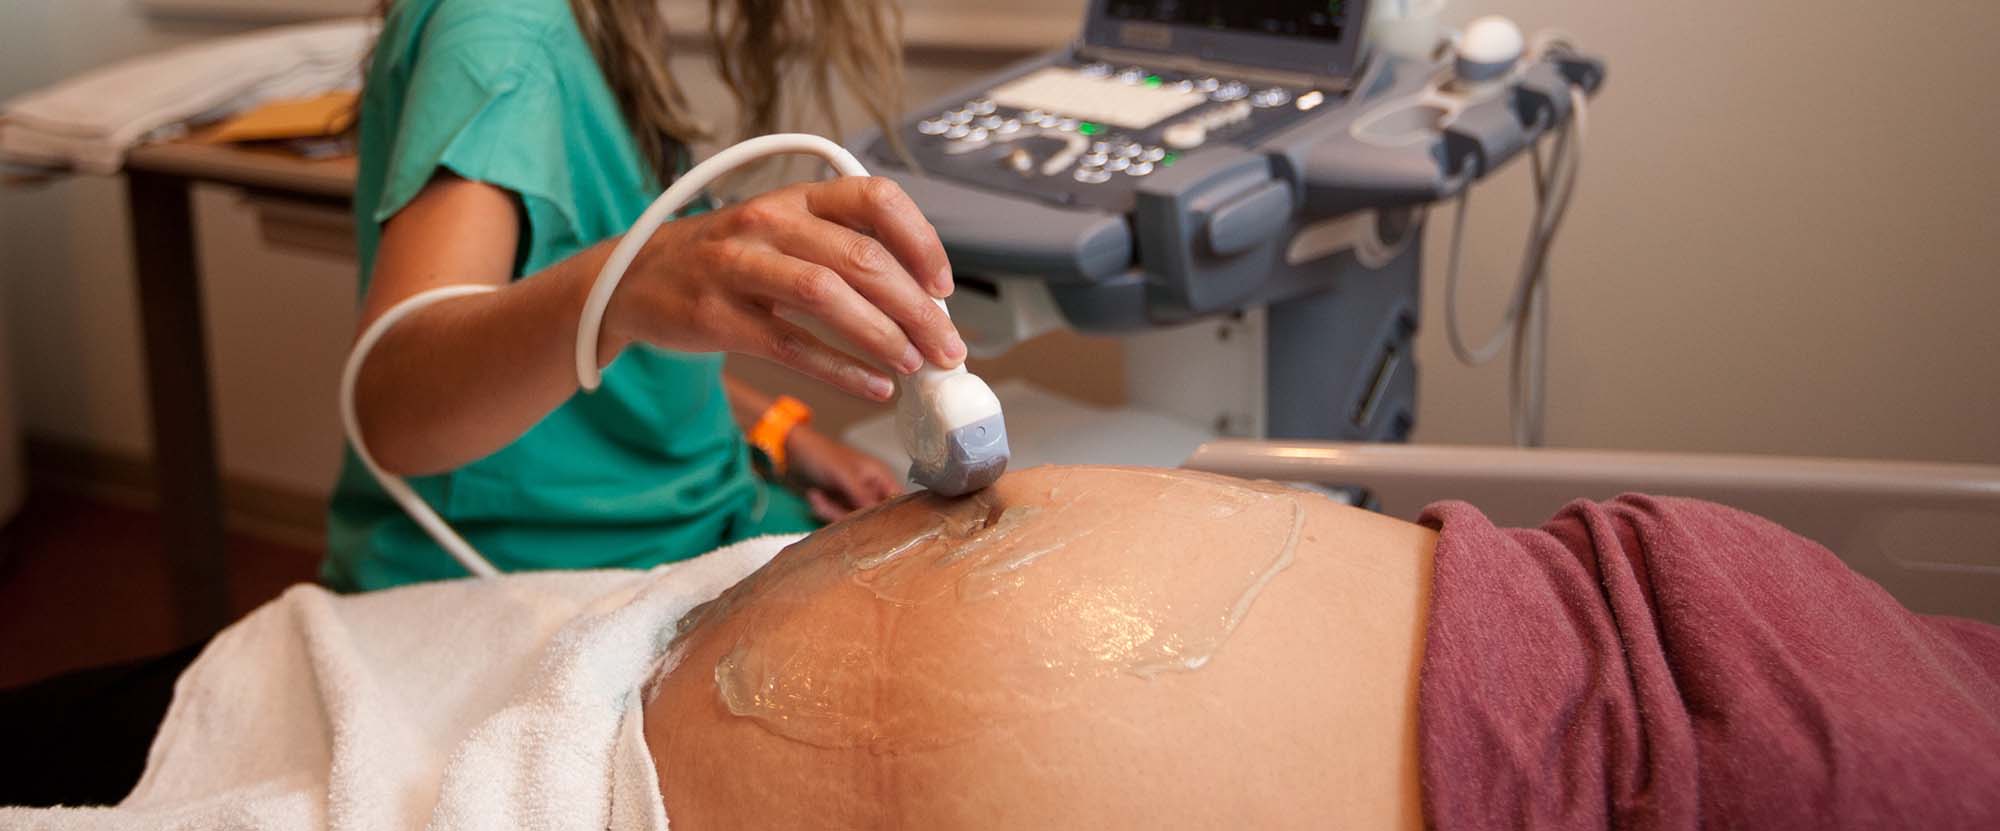 Uma mãe grávida passando por um ultra-som